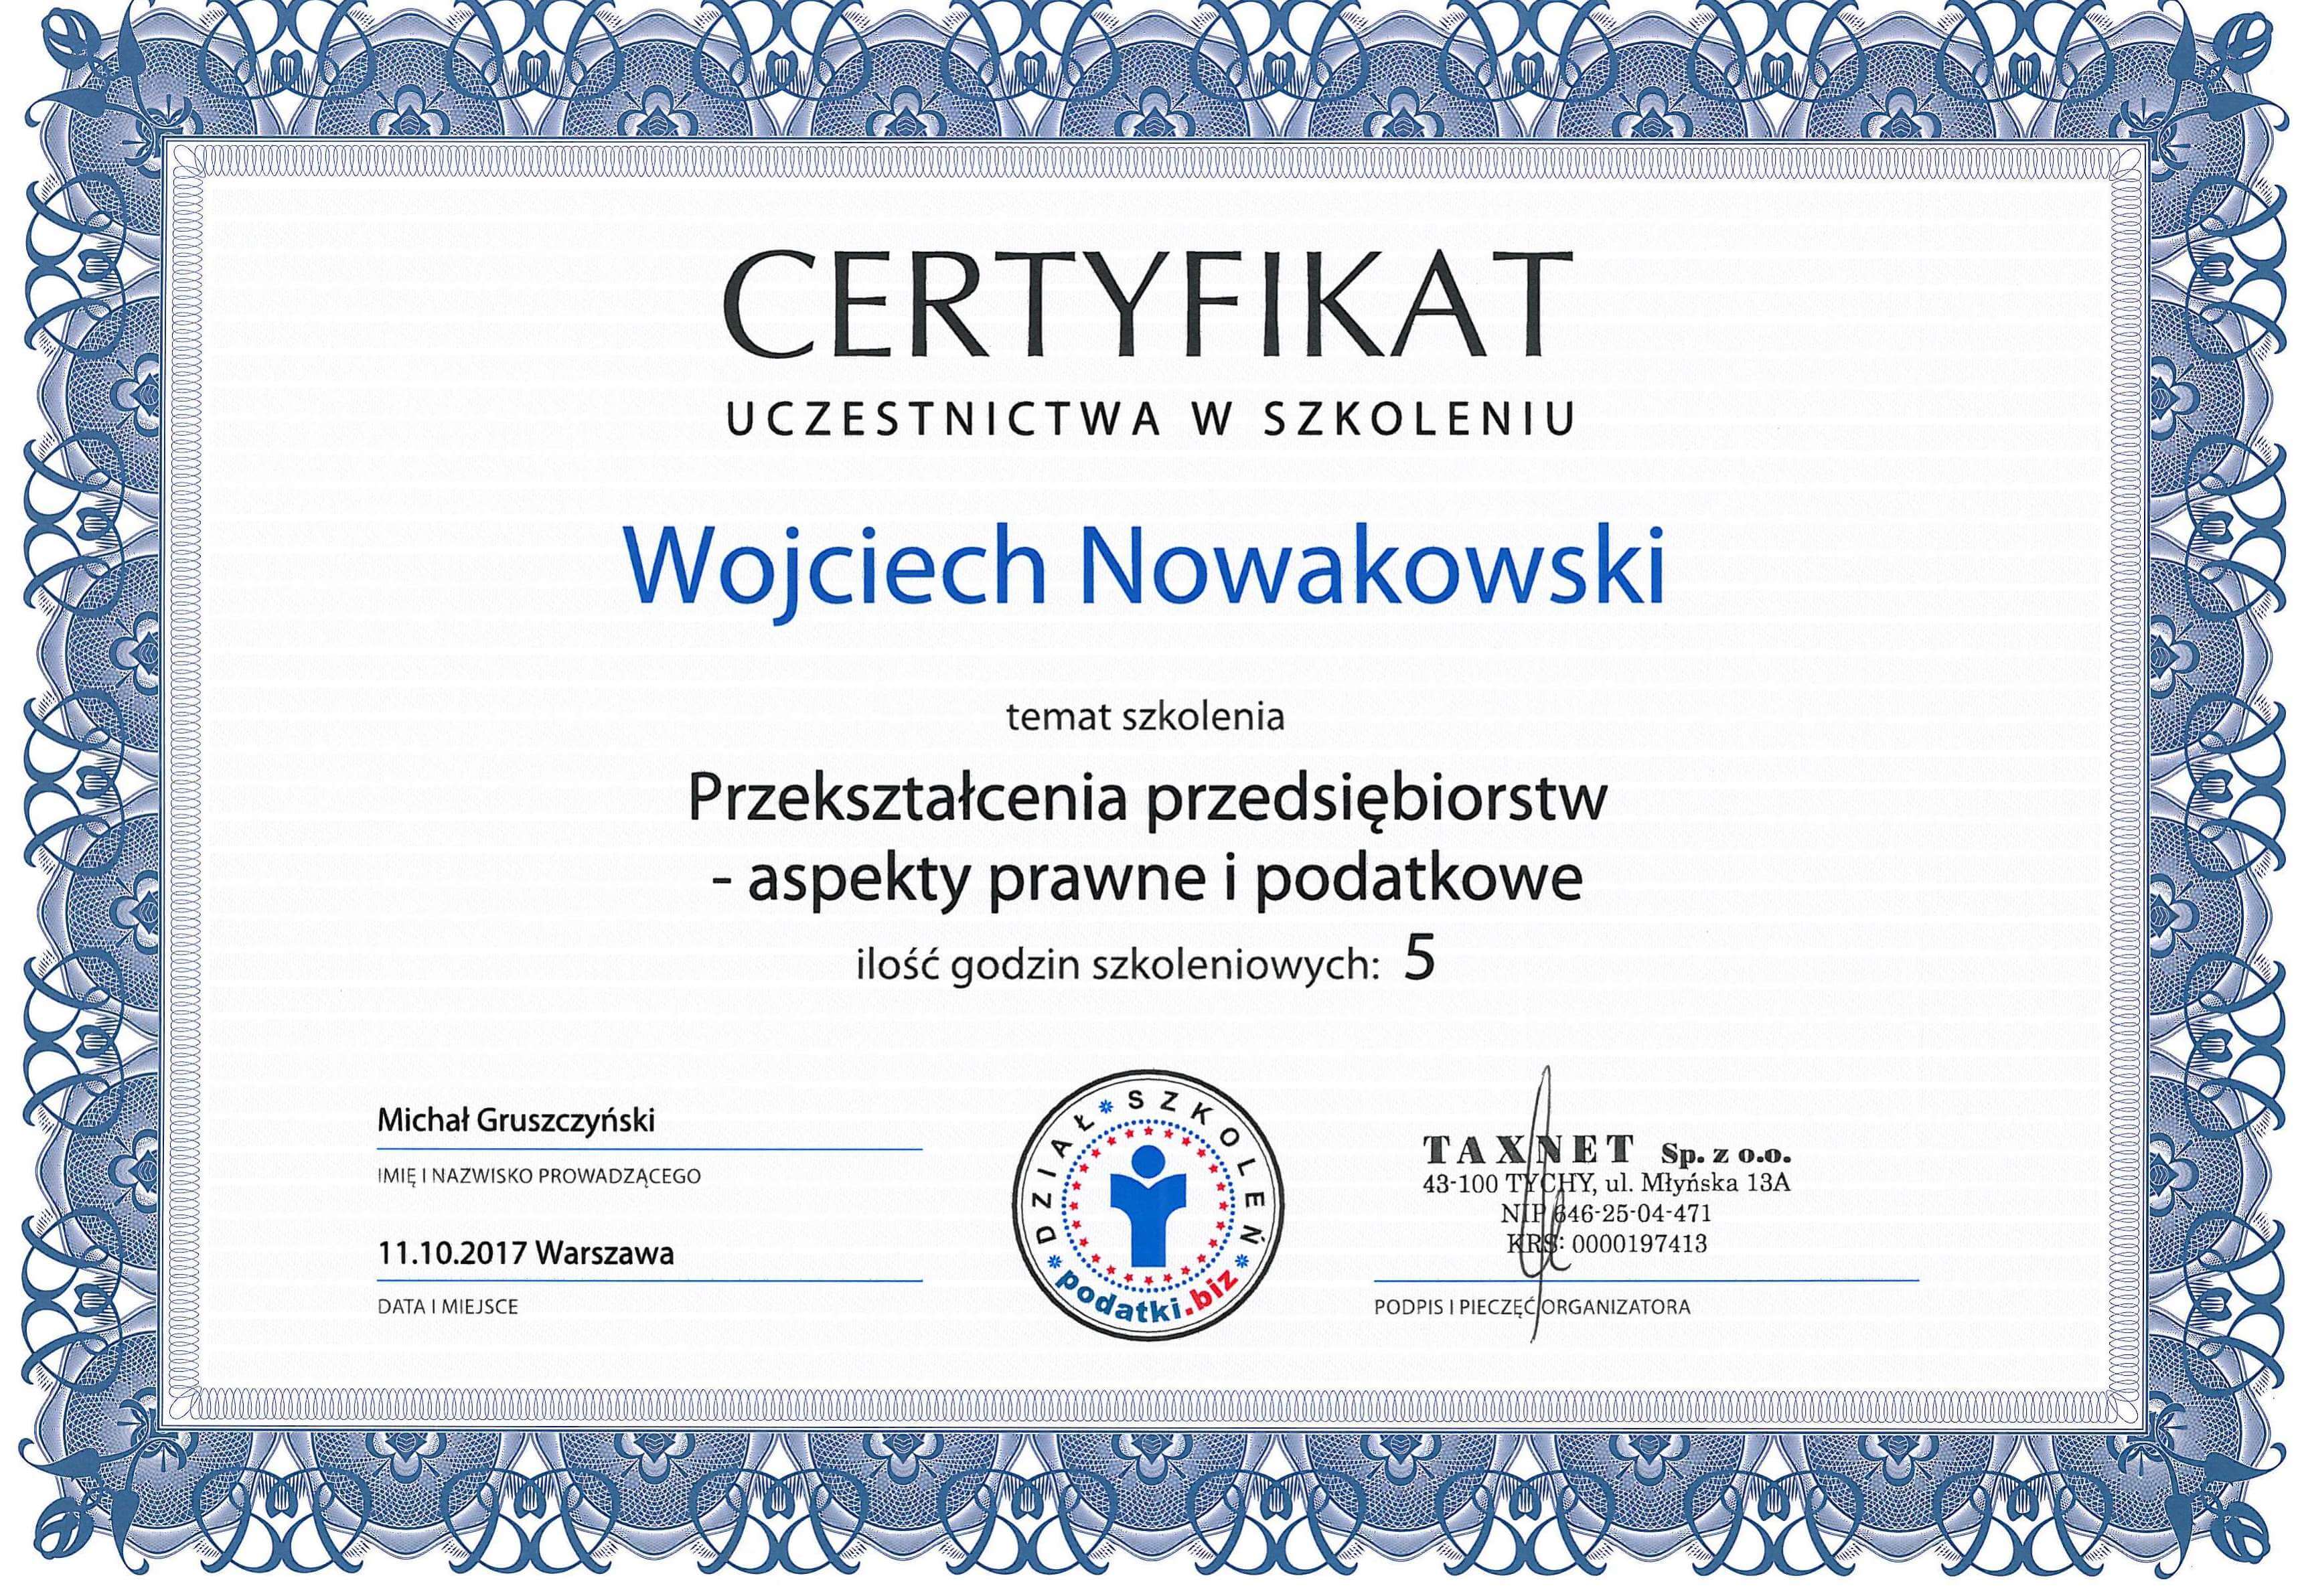 Przekształcenia przedsiębiorstw - aspekty prawne i podatkowe Wojciech Nowakowski certyfikat szkolenia